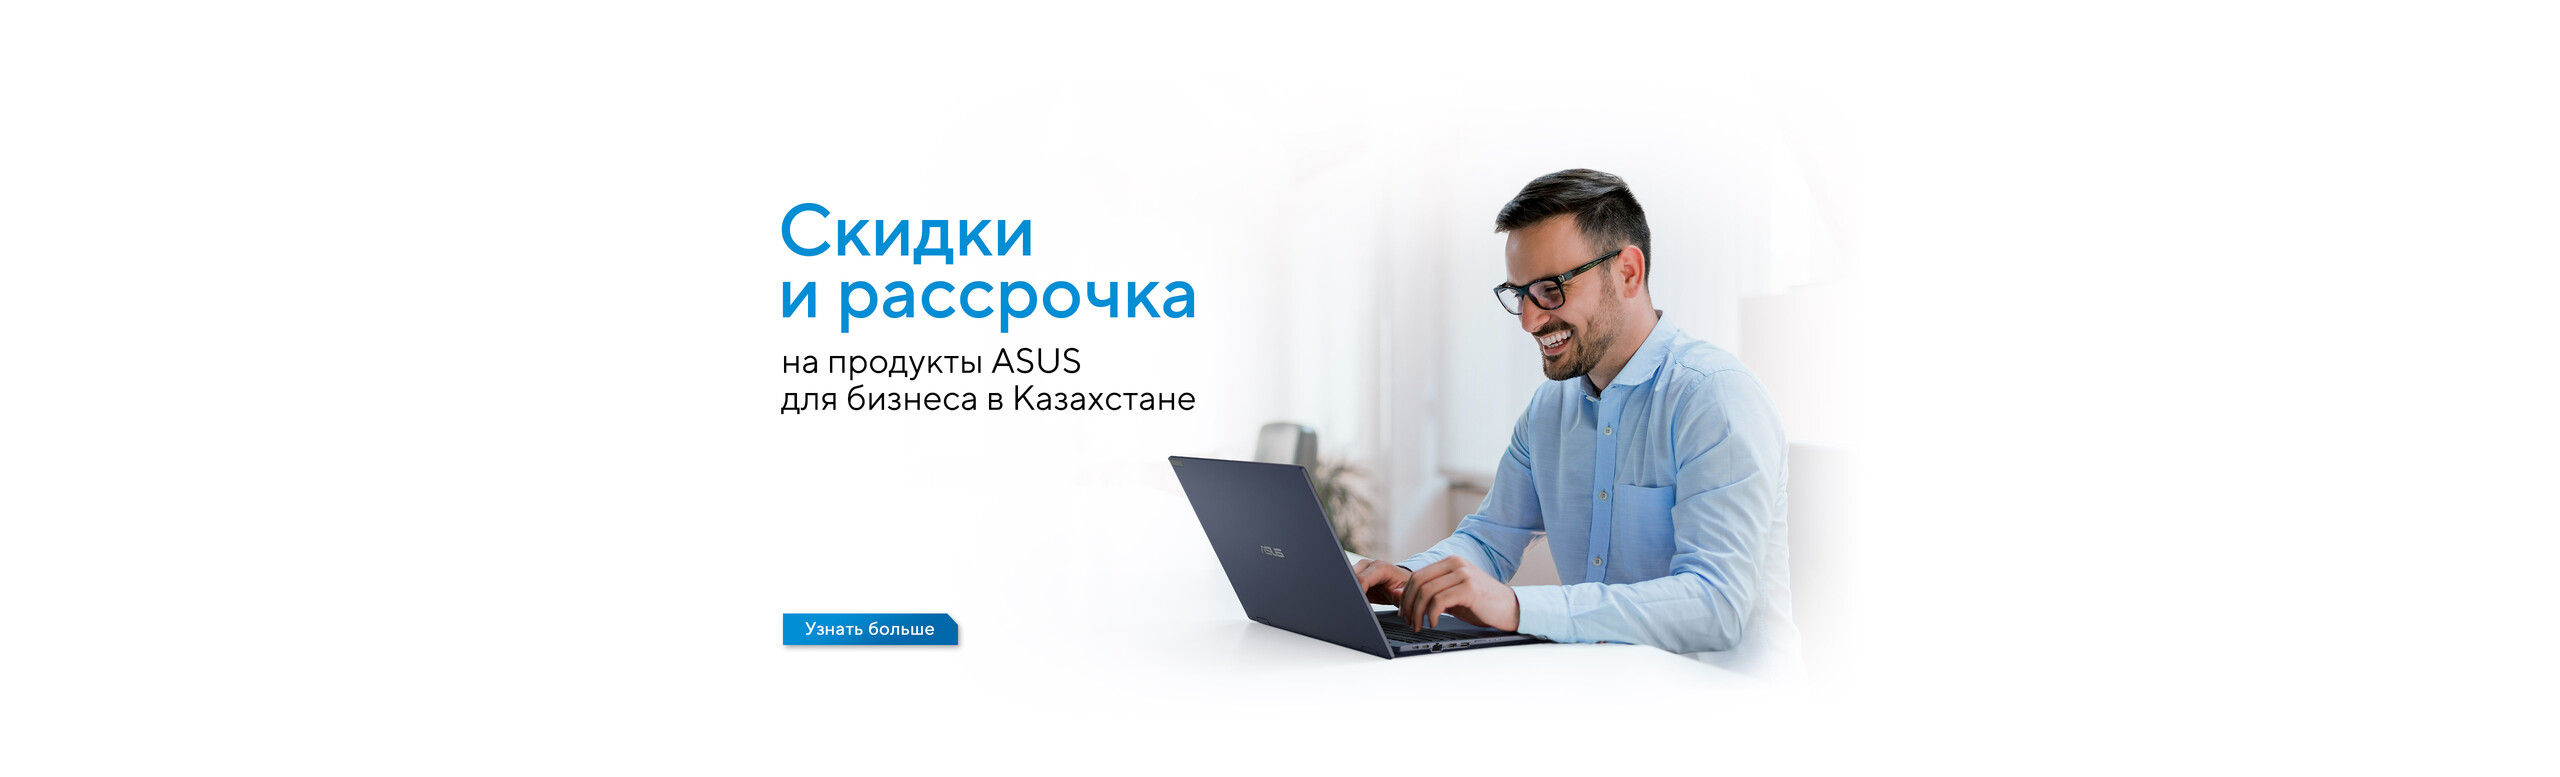 Скидки и рассрочка на продукты ASUS для бизнеса в Казахстане.